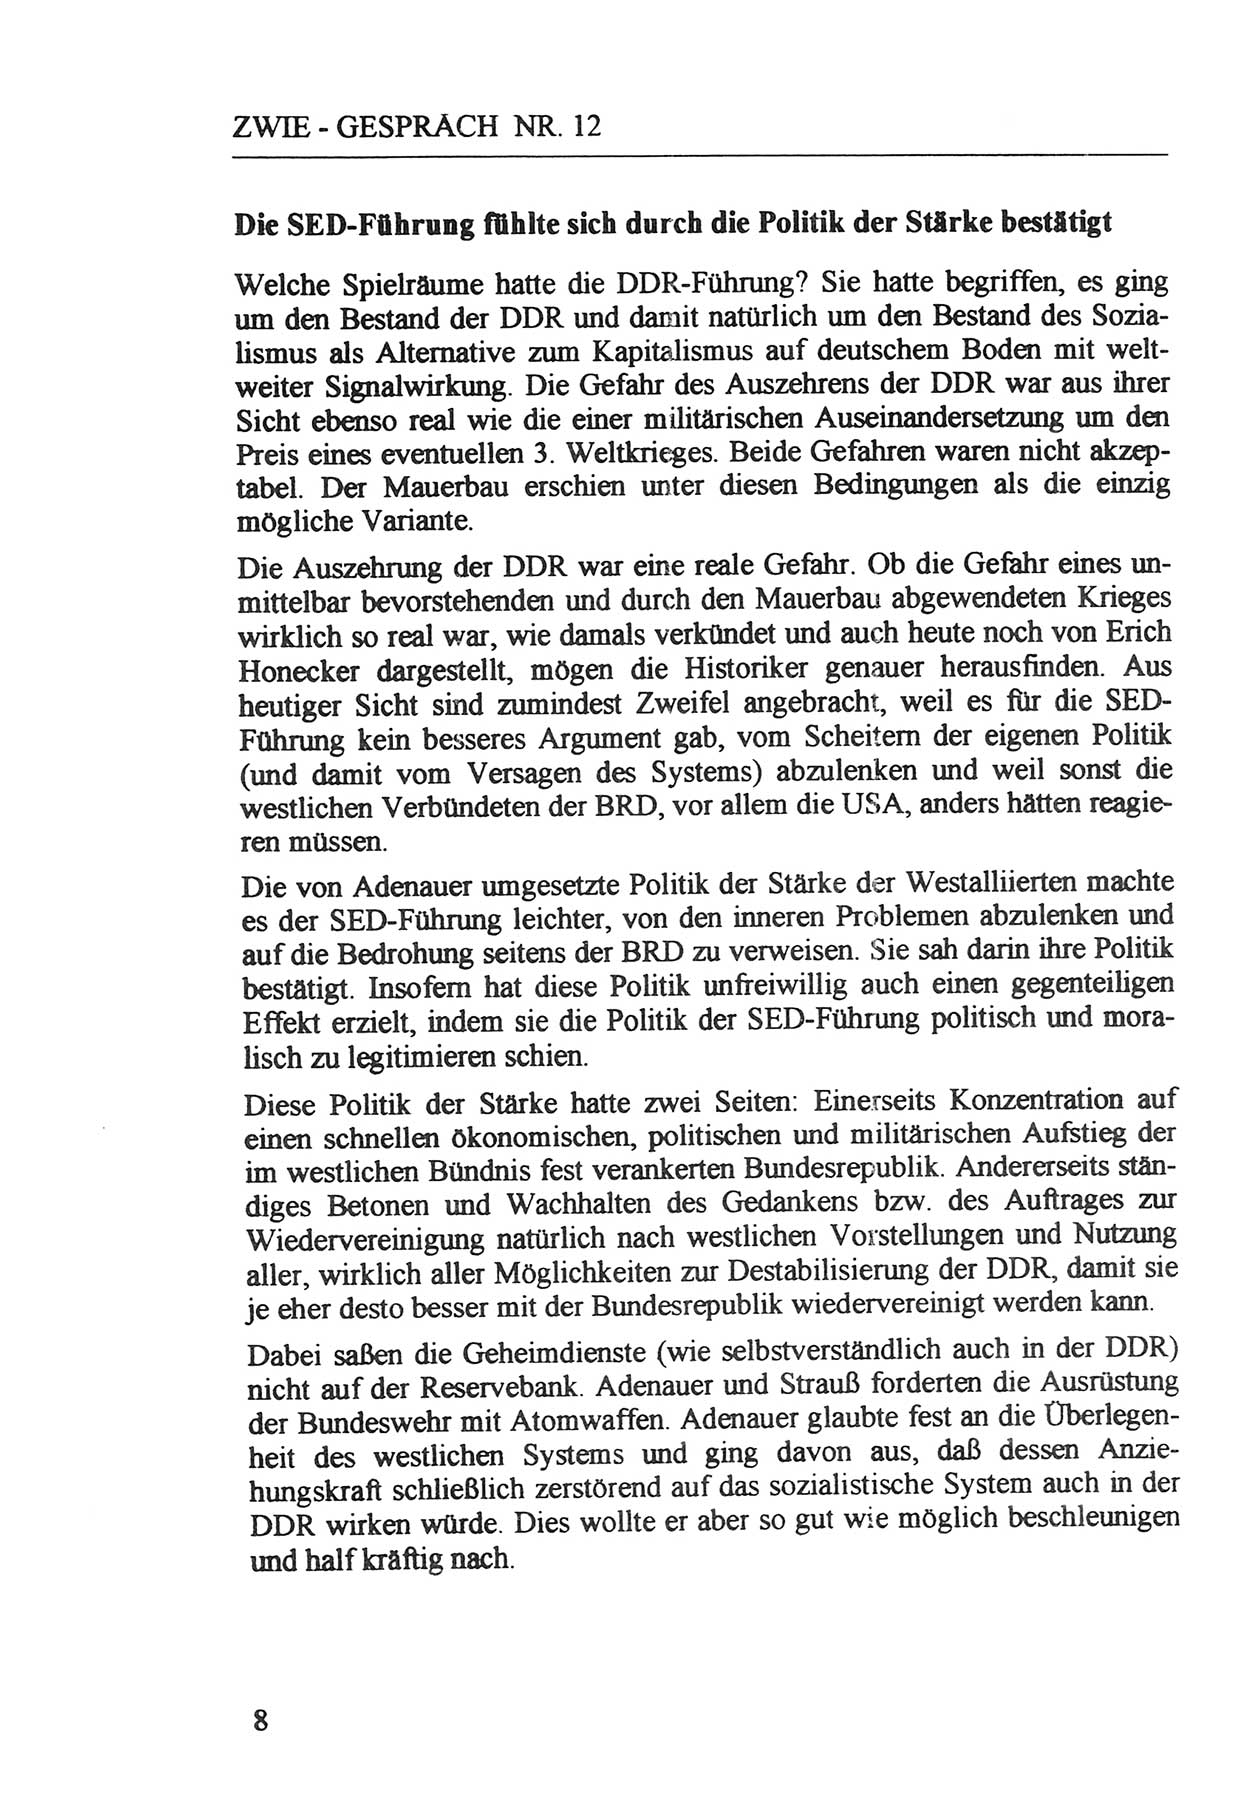 Zwie-Gespräch, Beiträge zur Aufarbeitung der Staatssicherheits-Vergangenheit [Deutsche Demokratische Republik (DDR)], Ausgabe Nr. 12, Berlin 1993, Seite 8 (Zwie-Gespr. Ausg. 12 1993, S. 8)